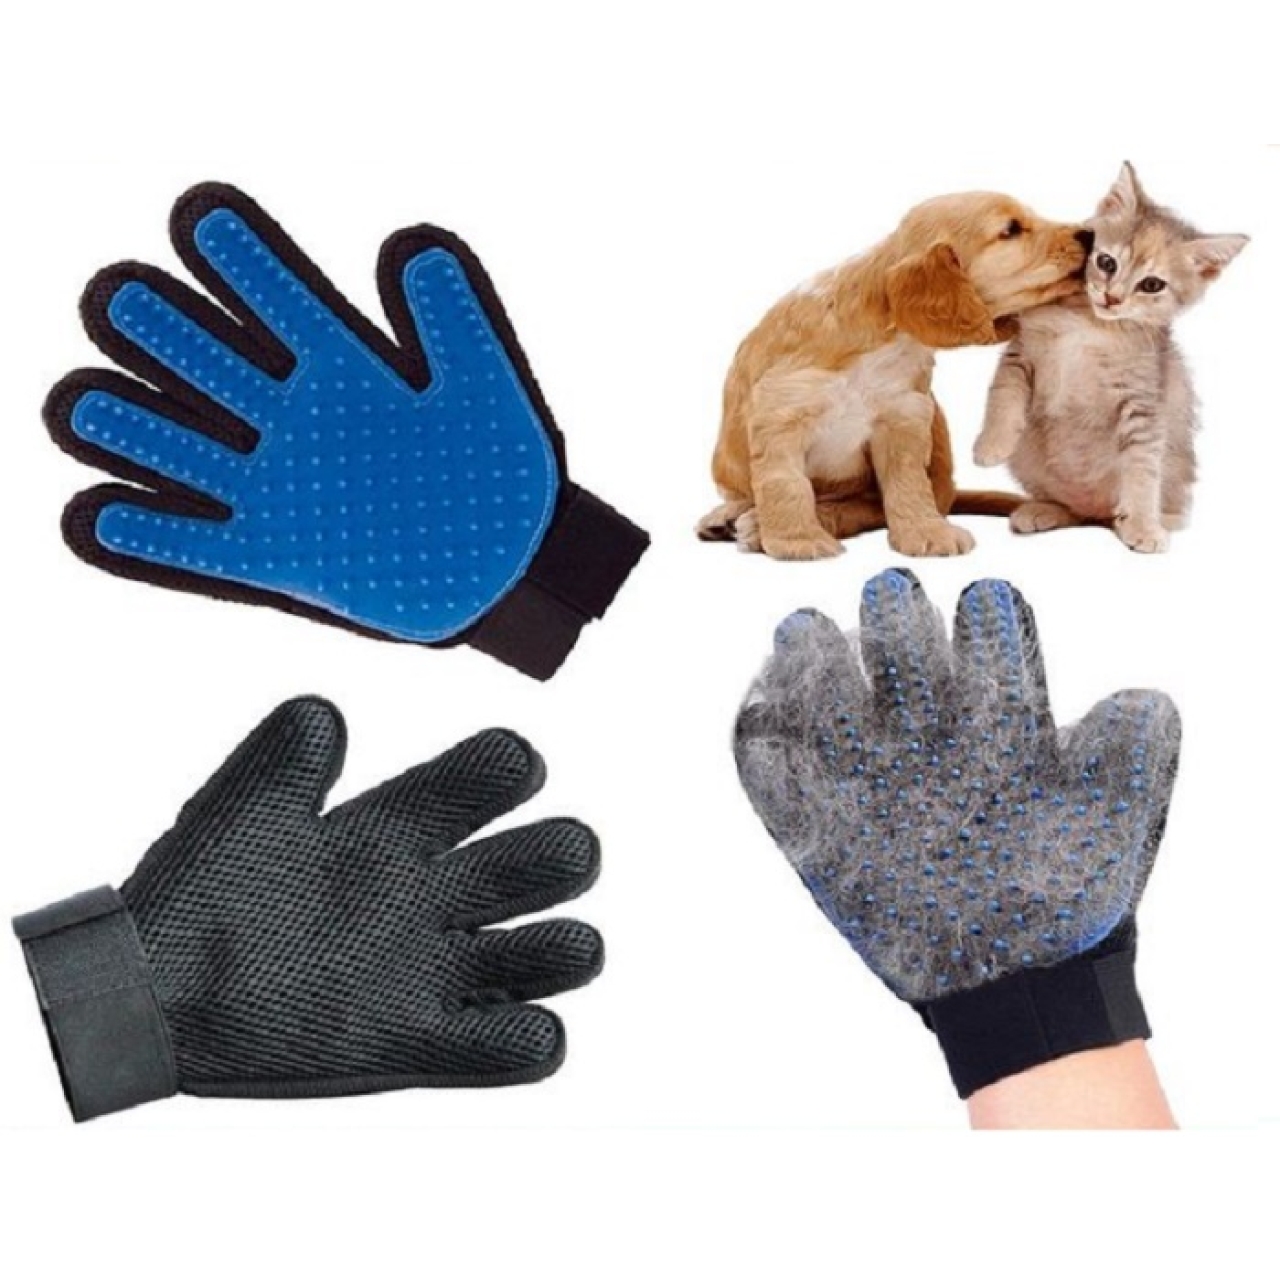 دستکش ماساژ و جمع کننده موی سگ و گربه کد 01808